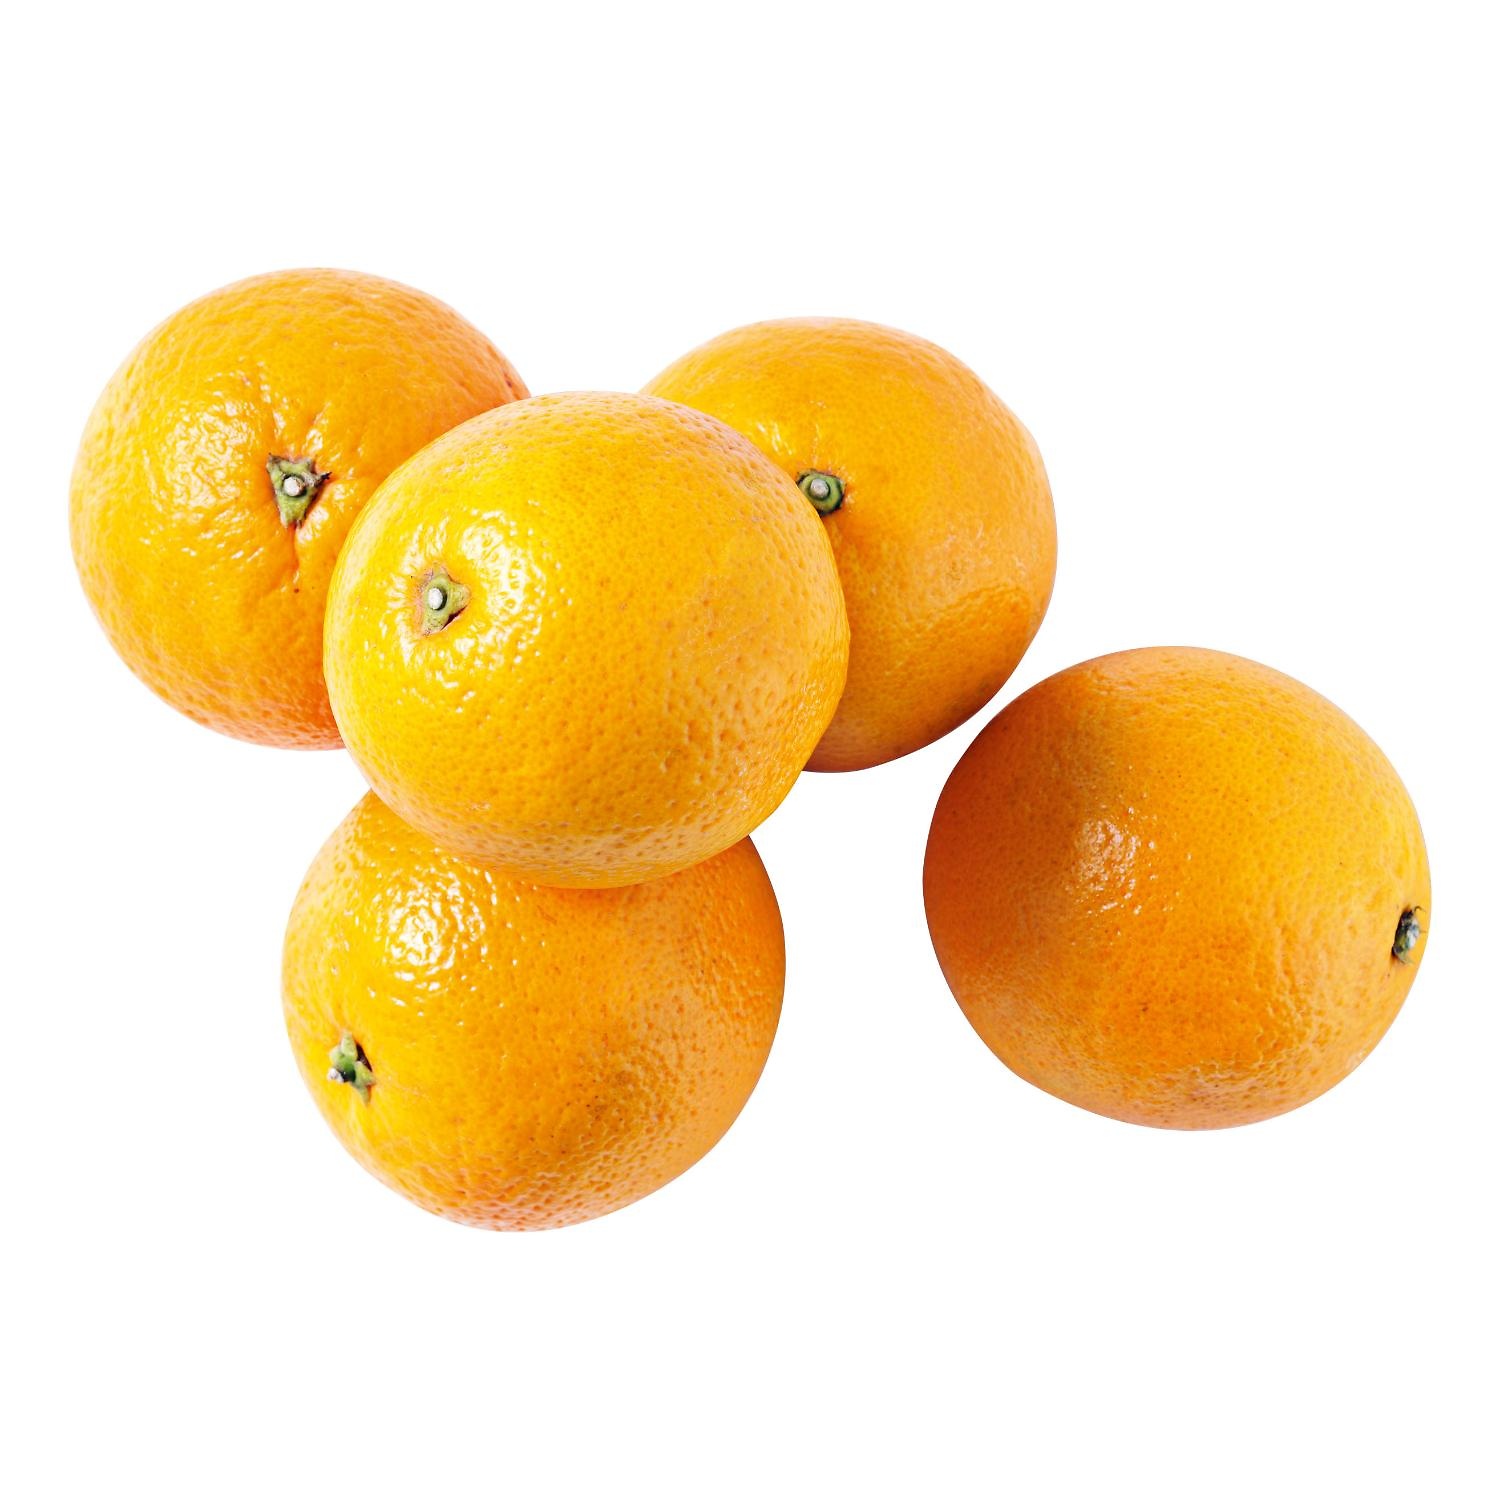 Sinaasappels navels klein  per stuk